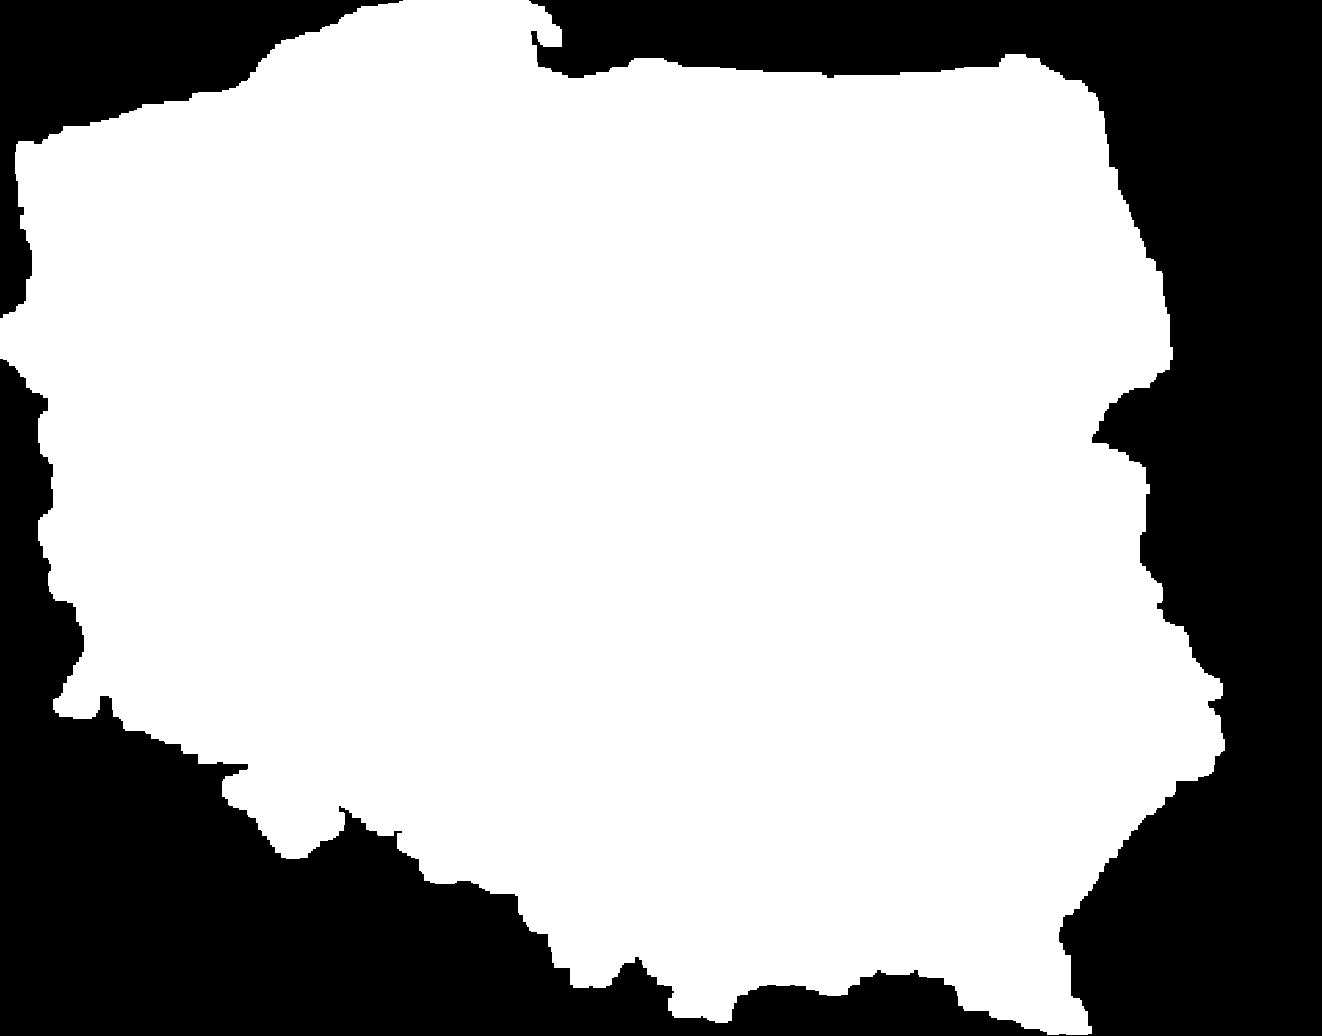 Agencje Rozwoju Regionalnego ARP jest akcjonariuszem 27 Agencji Rozwoju Regionalnego wspierających rozwój regionów poprzez: Zielona Góra Słupsk